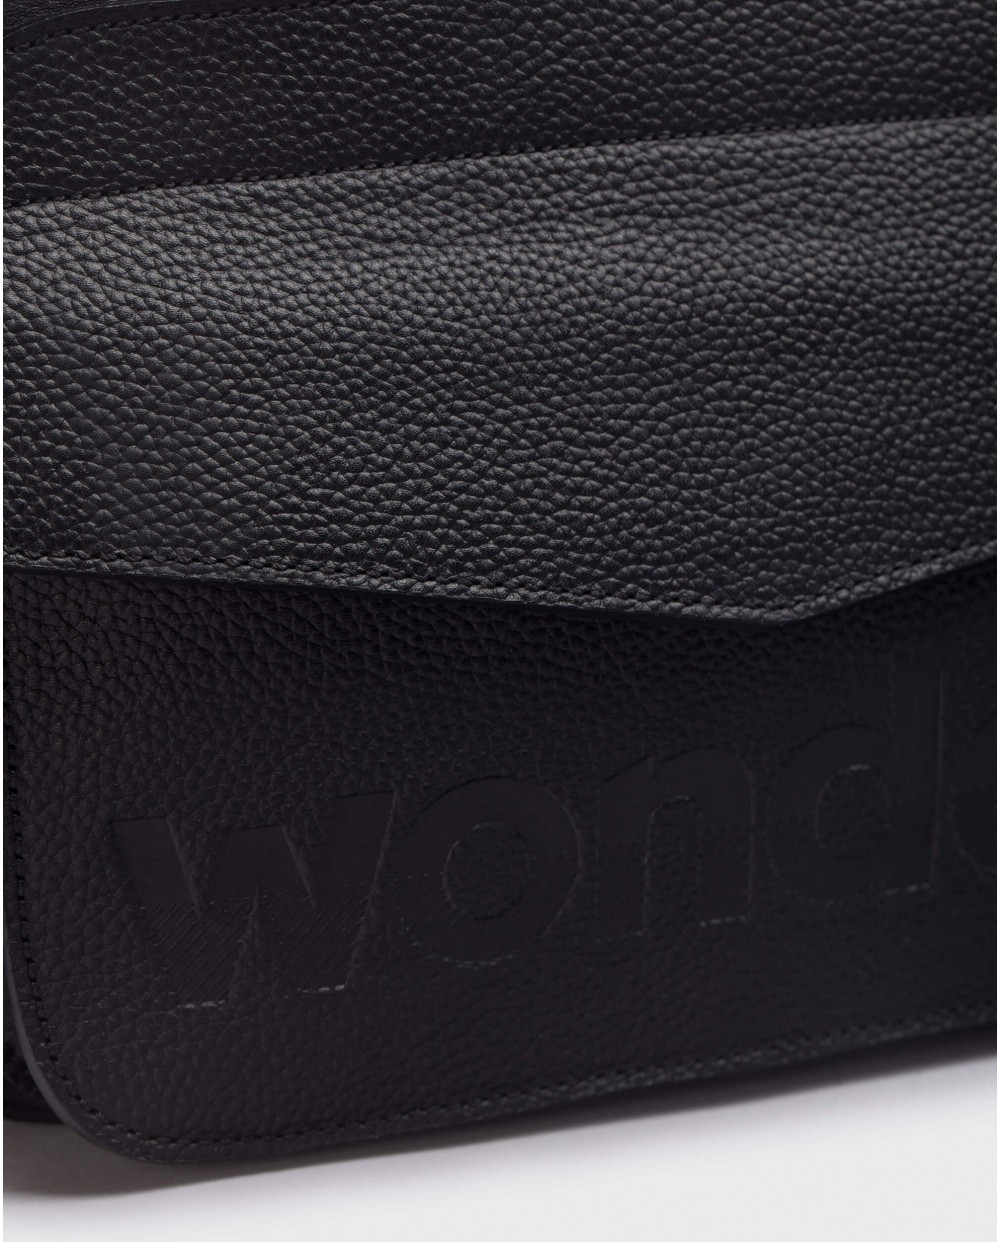 Wonders-Bags-Black Pocket bag